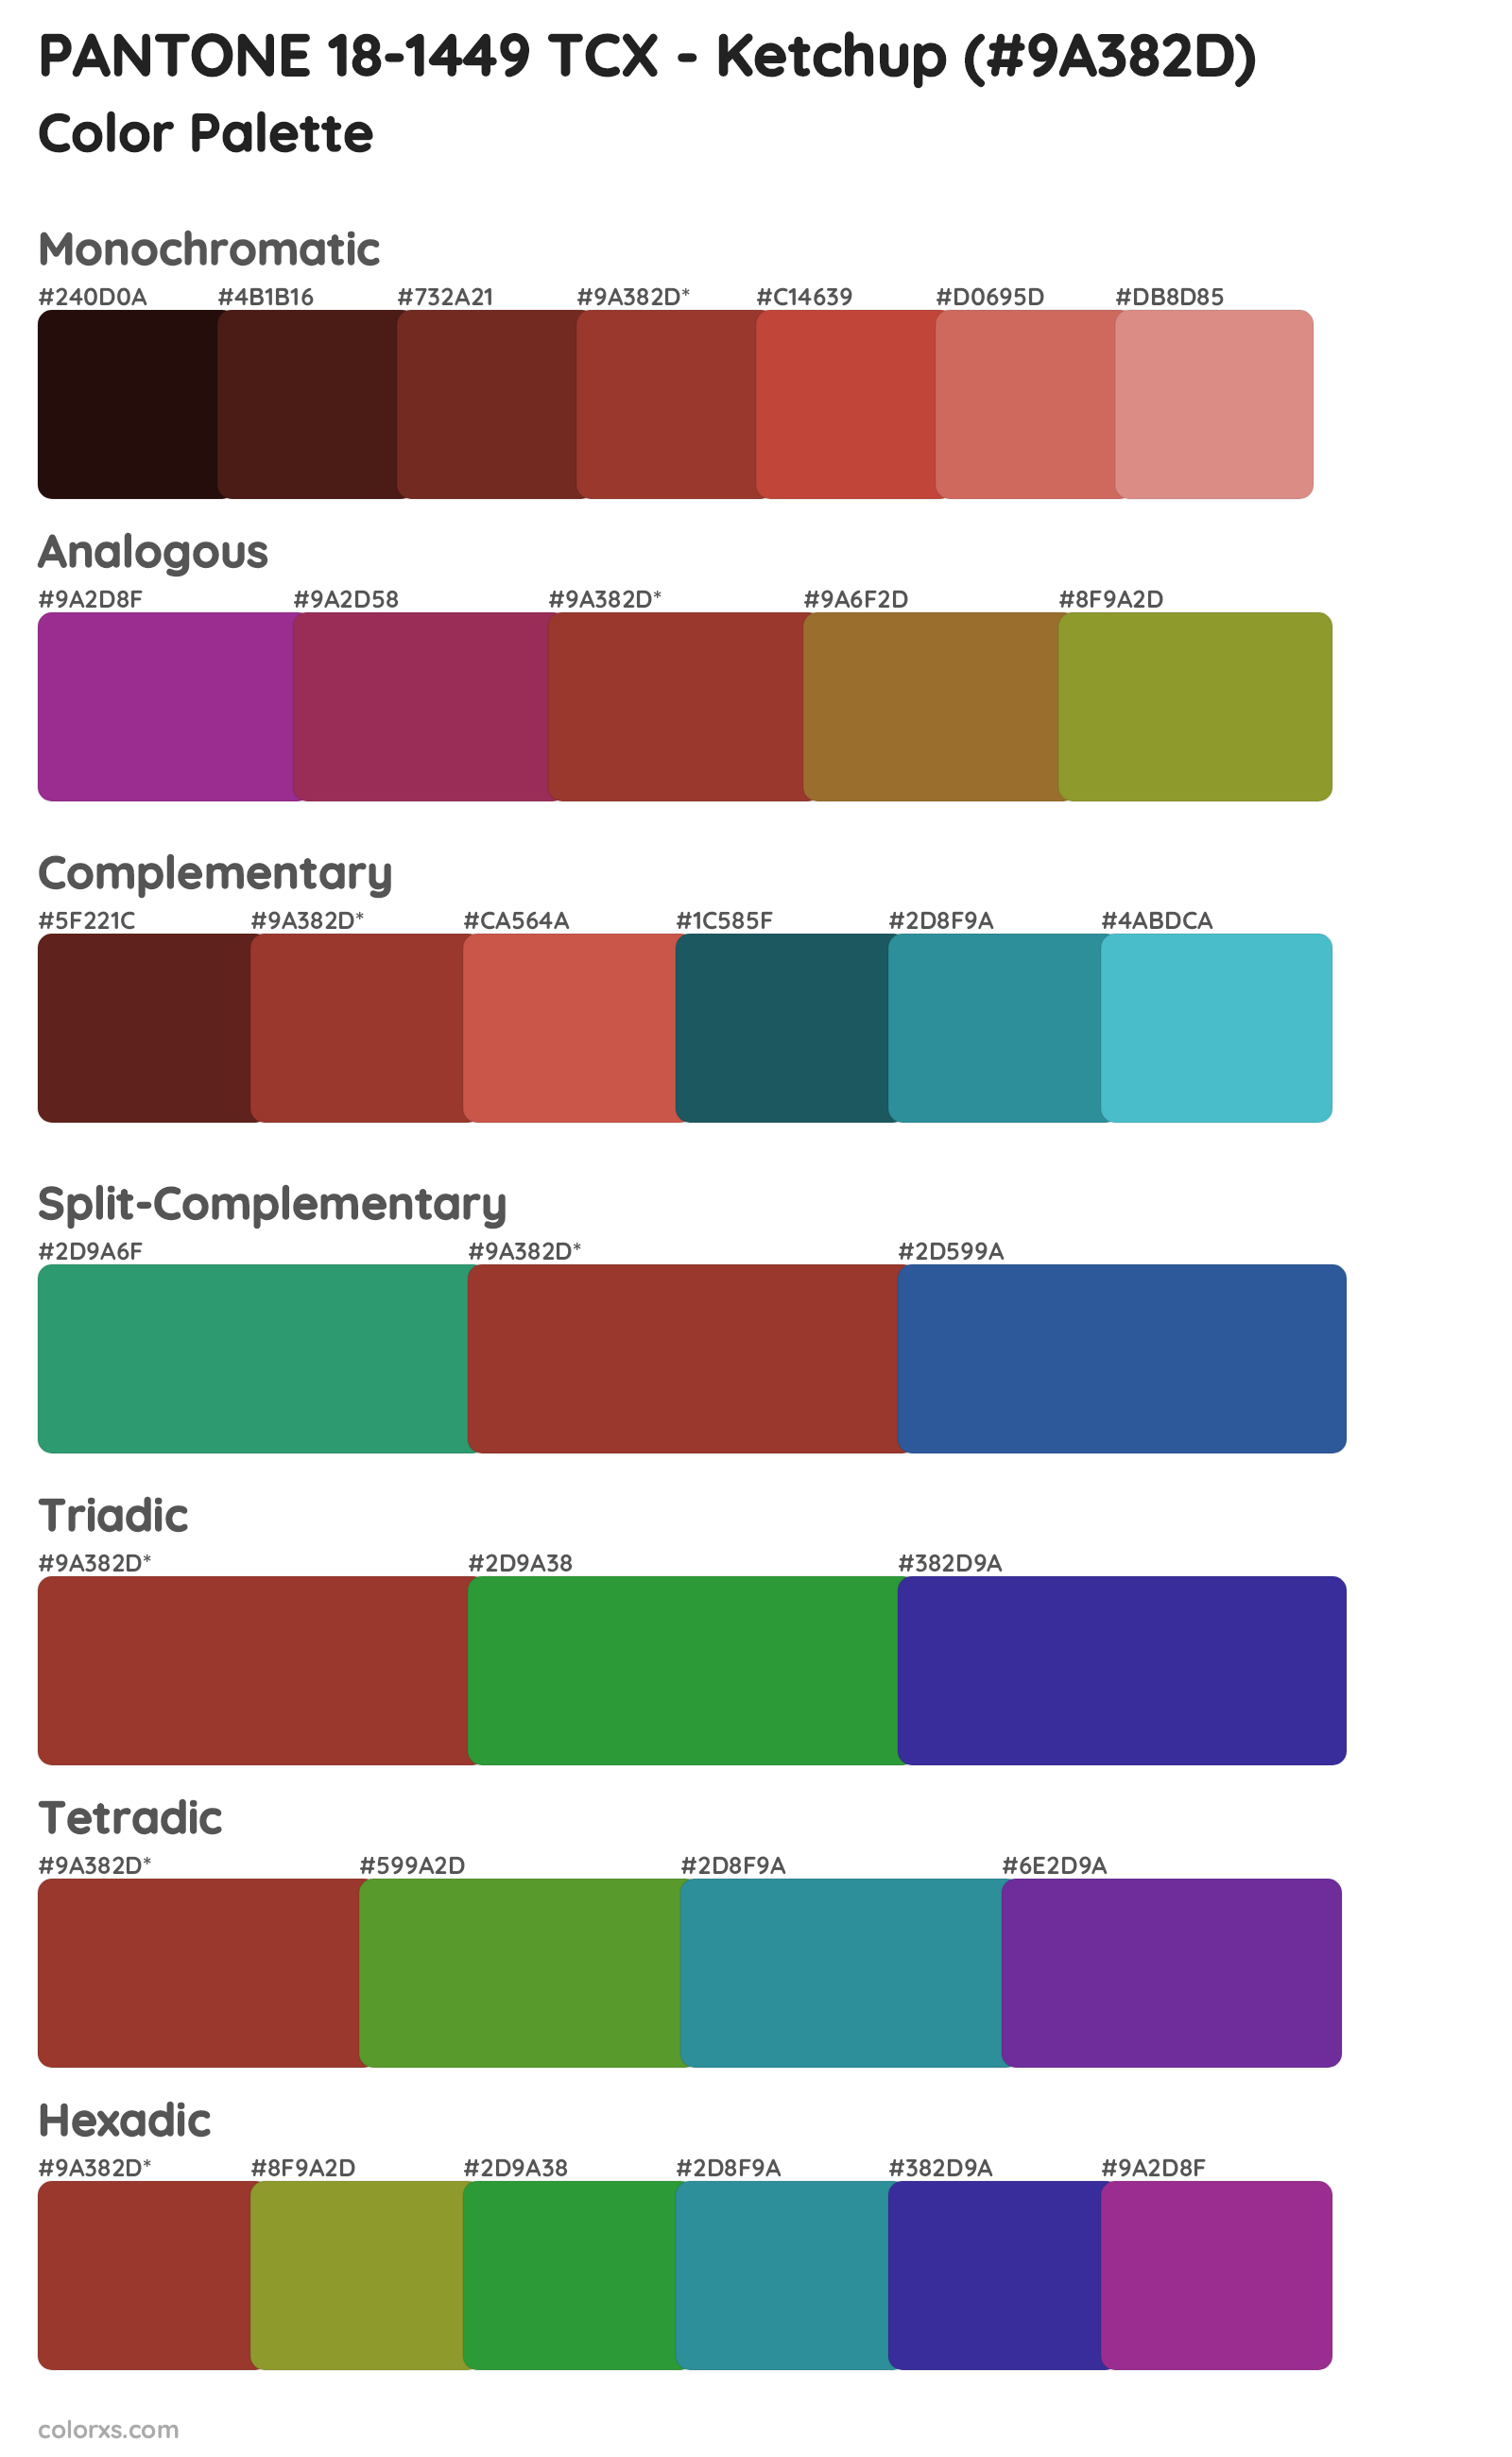 PANTONE 18-1449 TCX - Ketchup Color Scheme Palettes